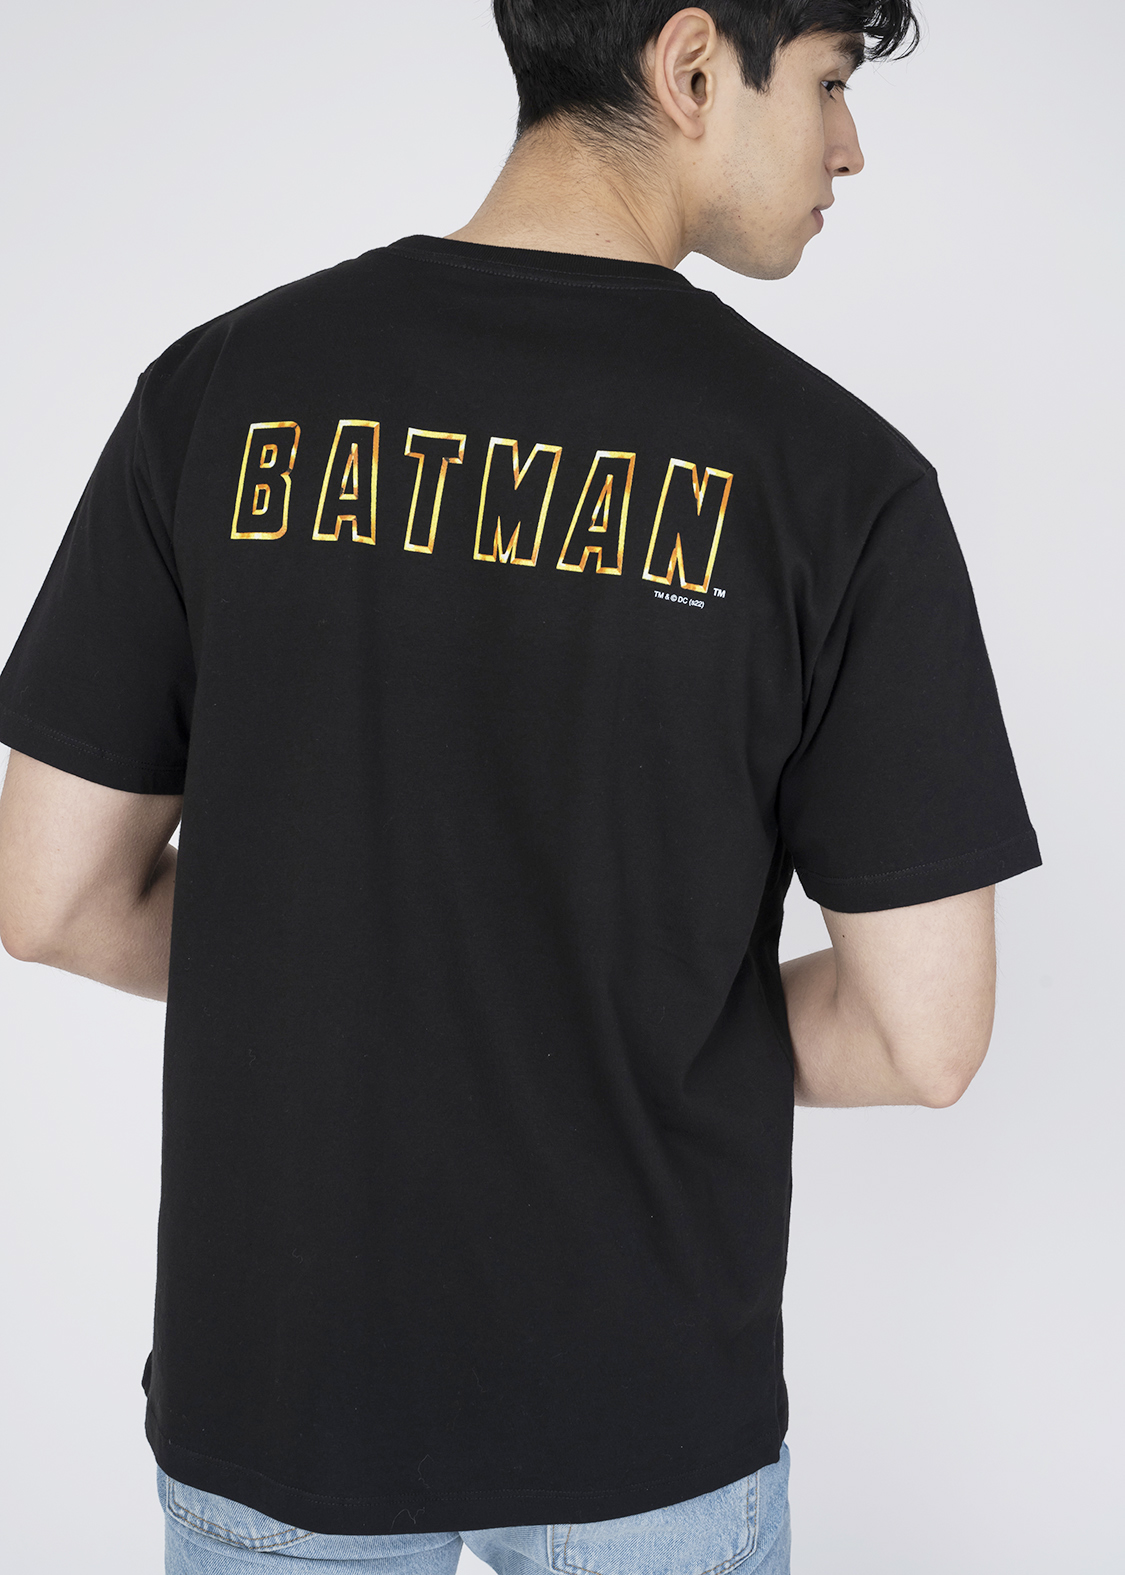 グラニフ「バットマン」 Tシャツ「バットマン」背面